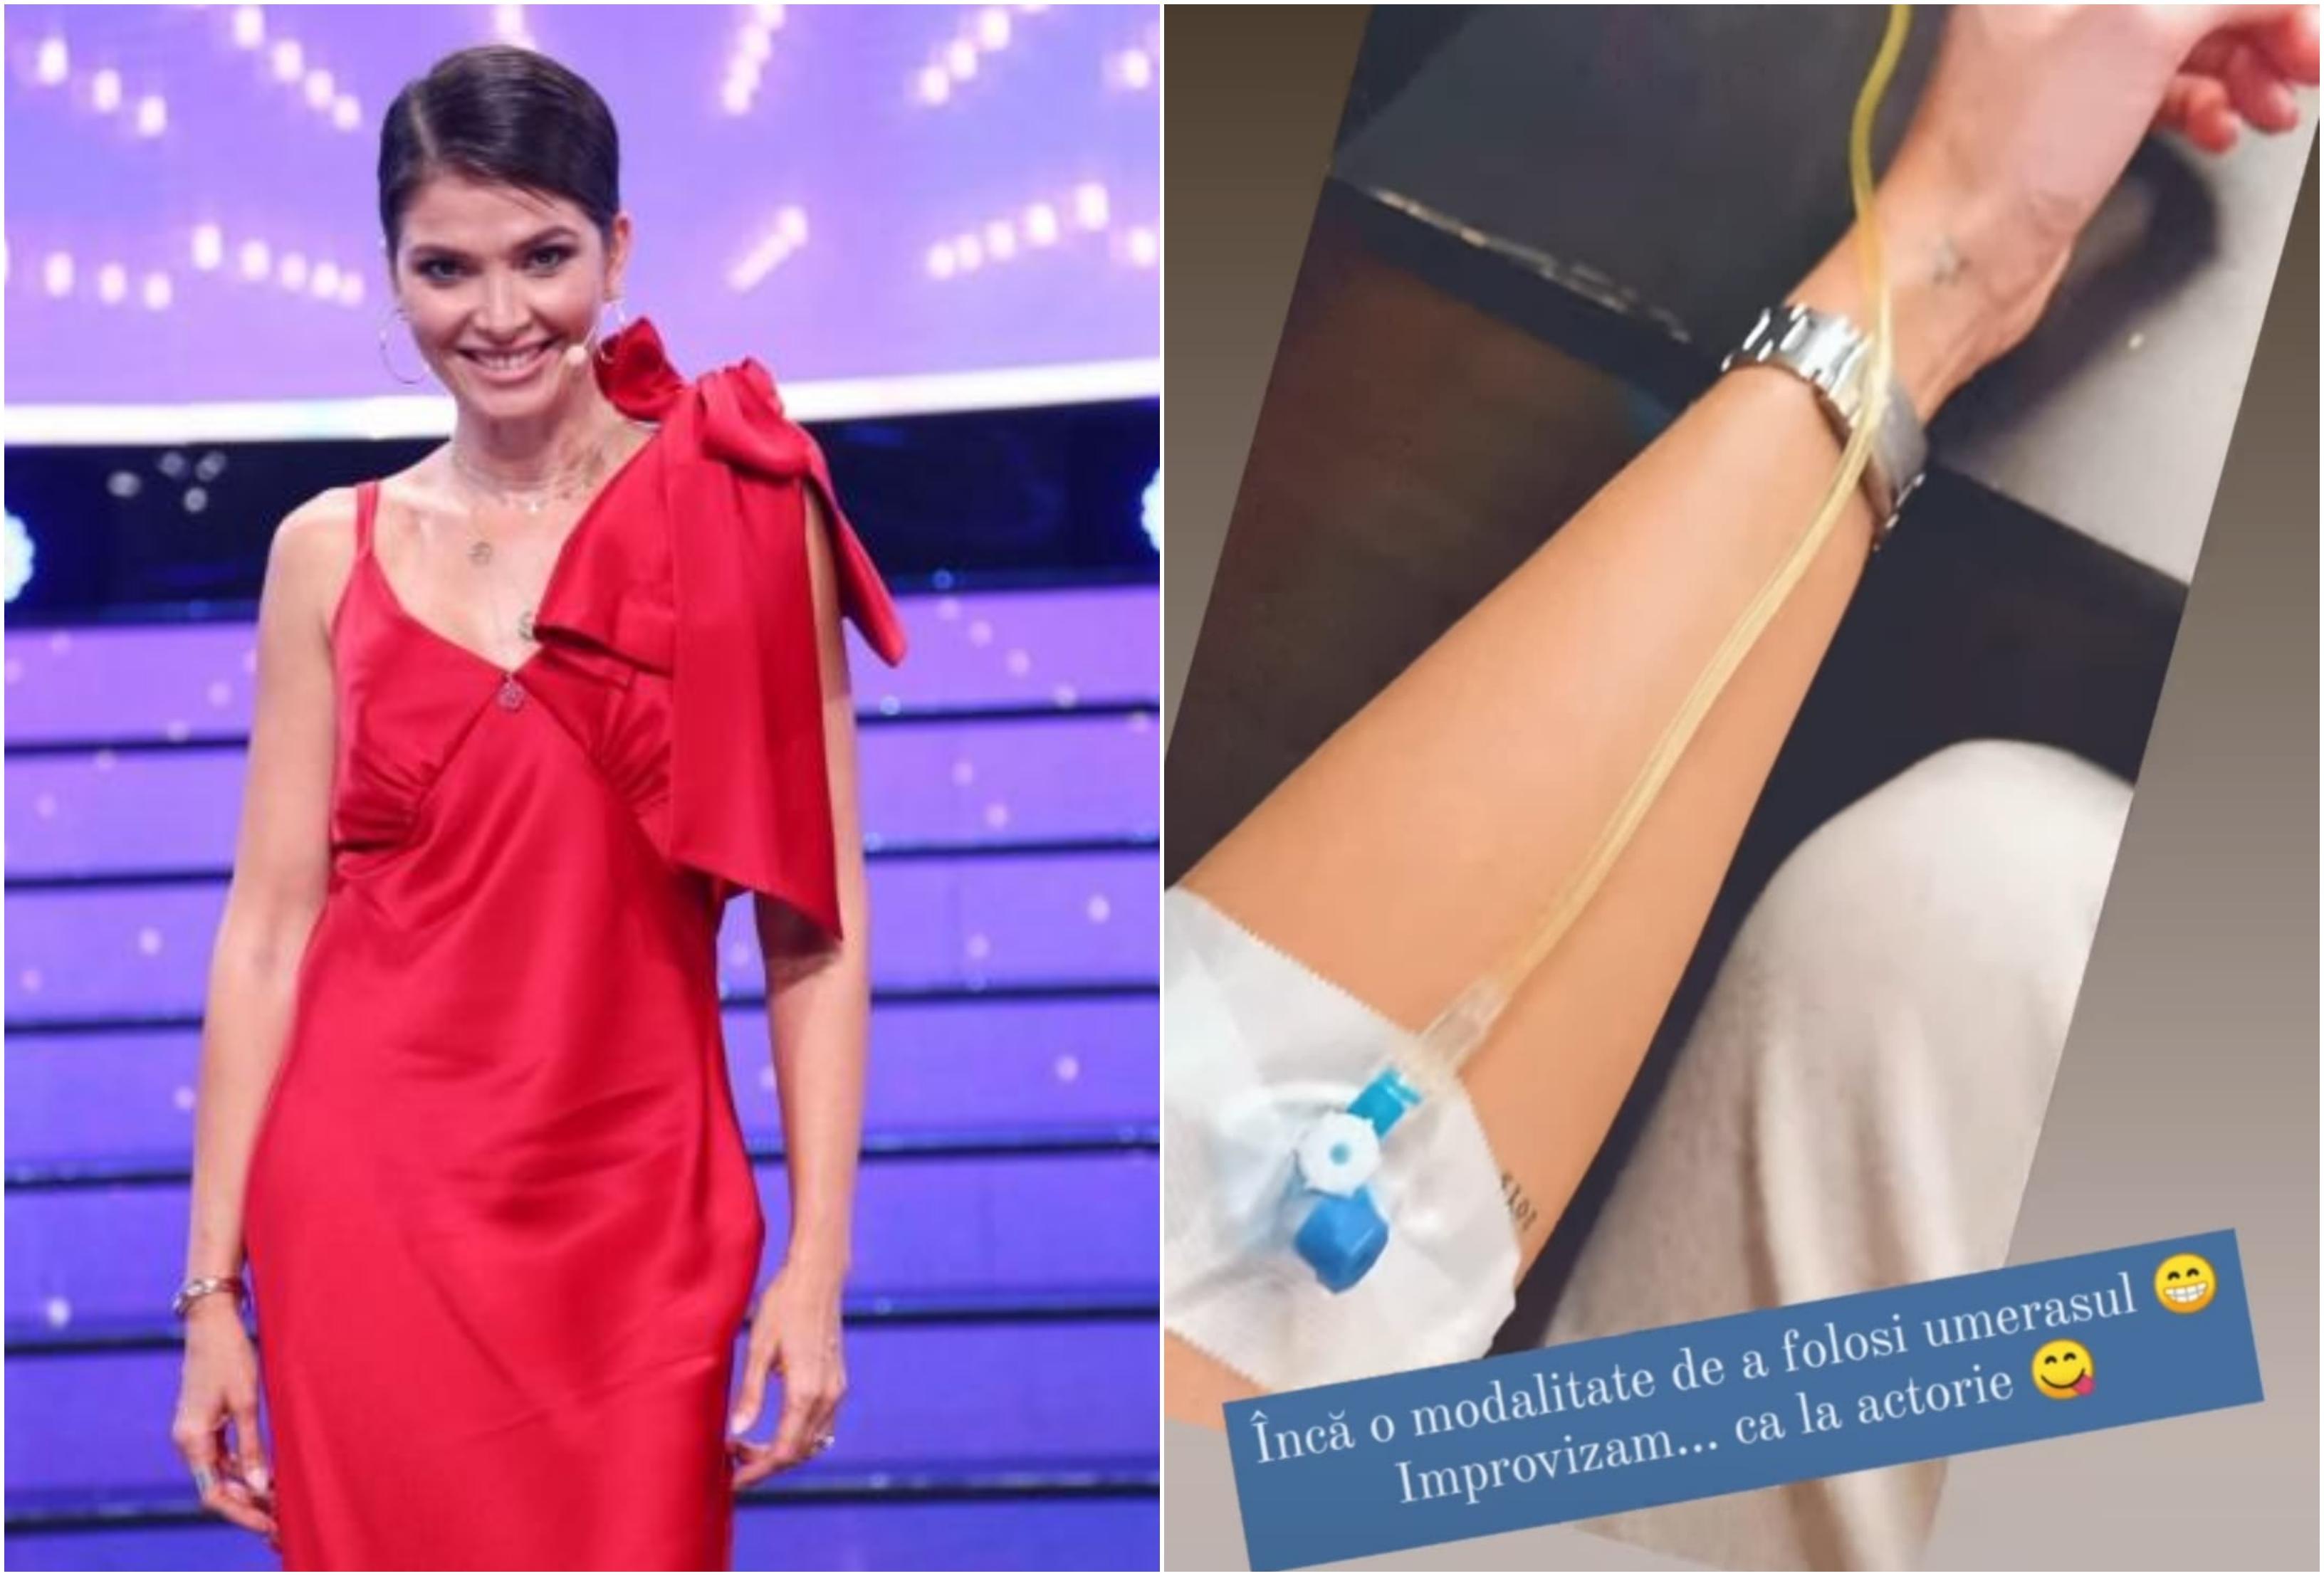 colag foto cu Alina Pușcaș într-o rochie roșie și o imagine cu branula în mână